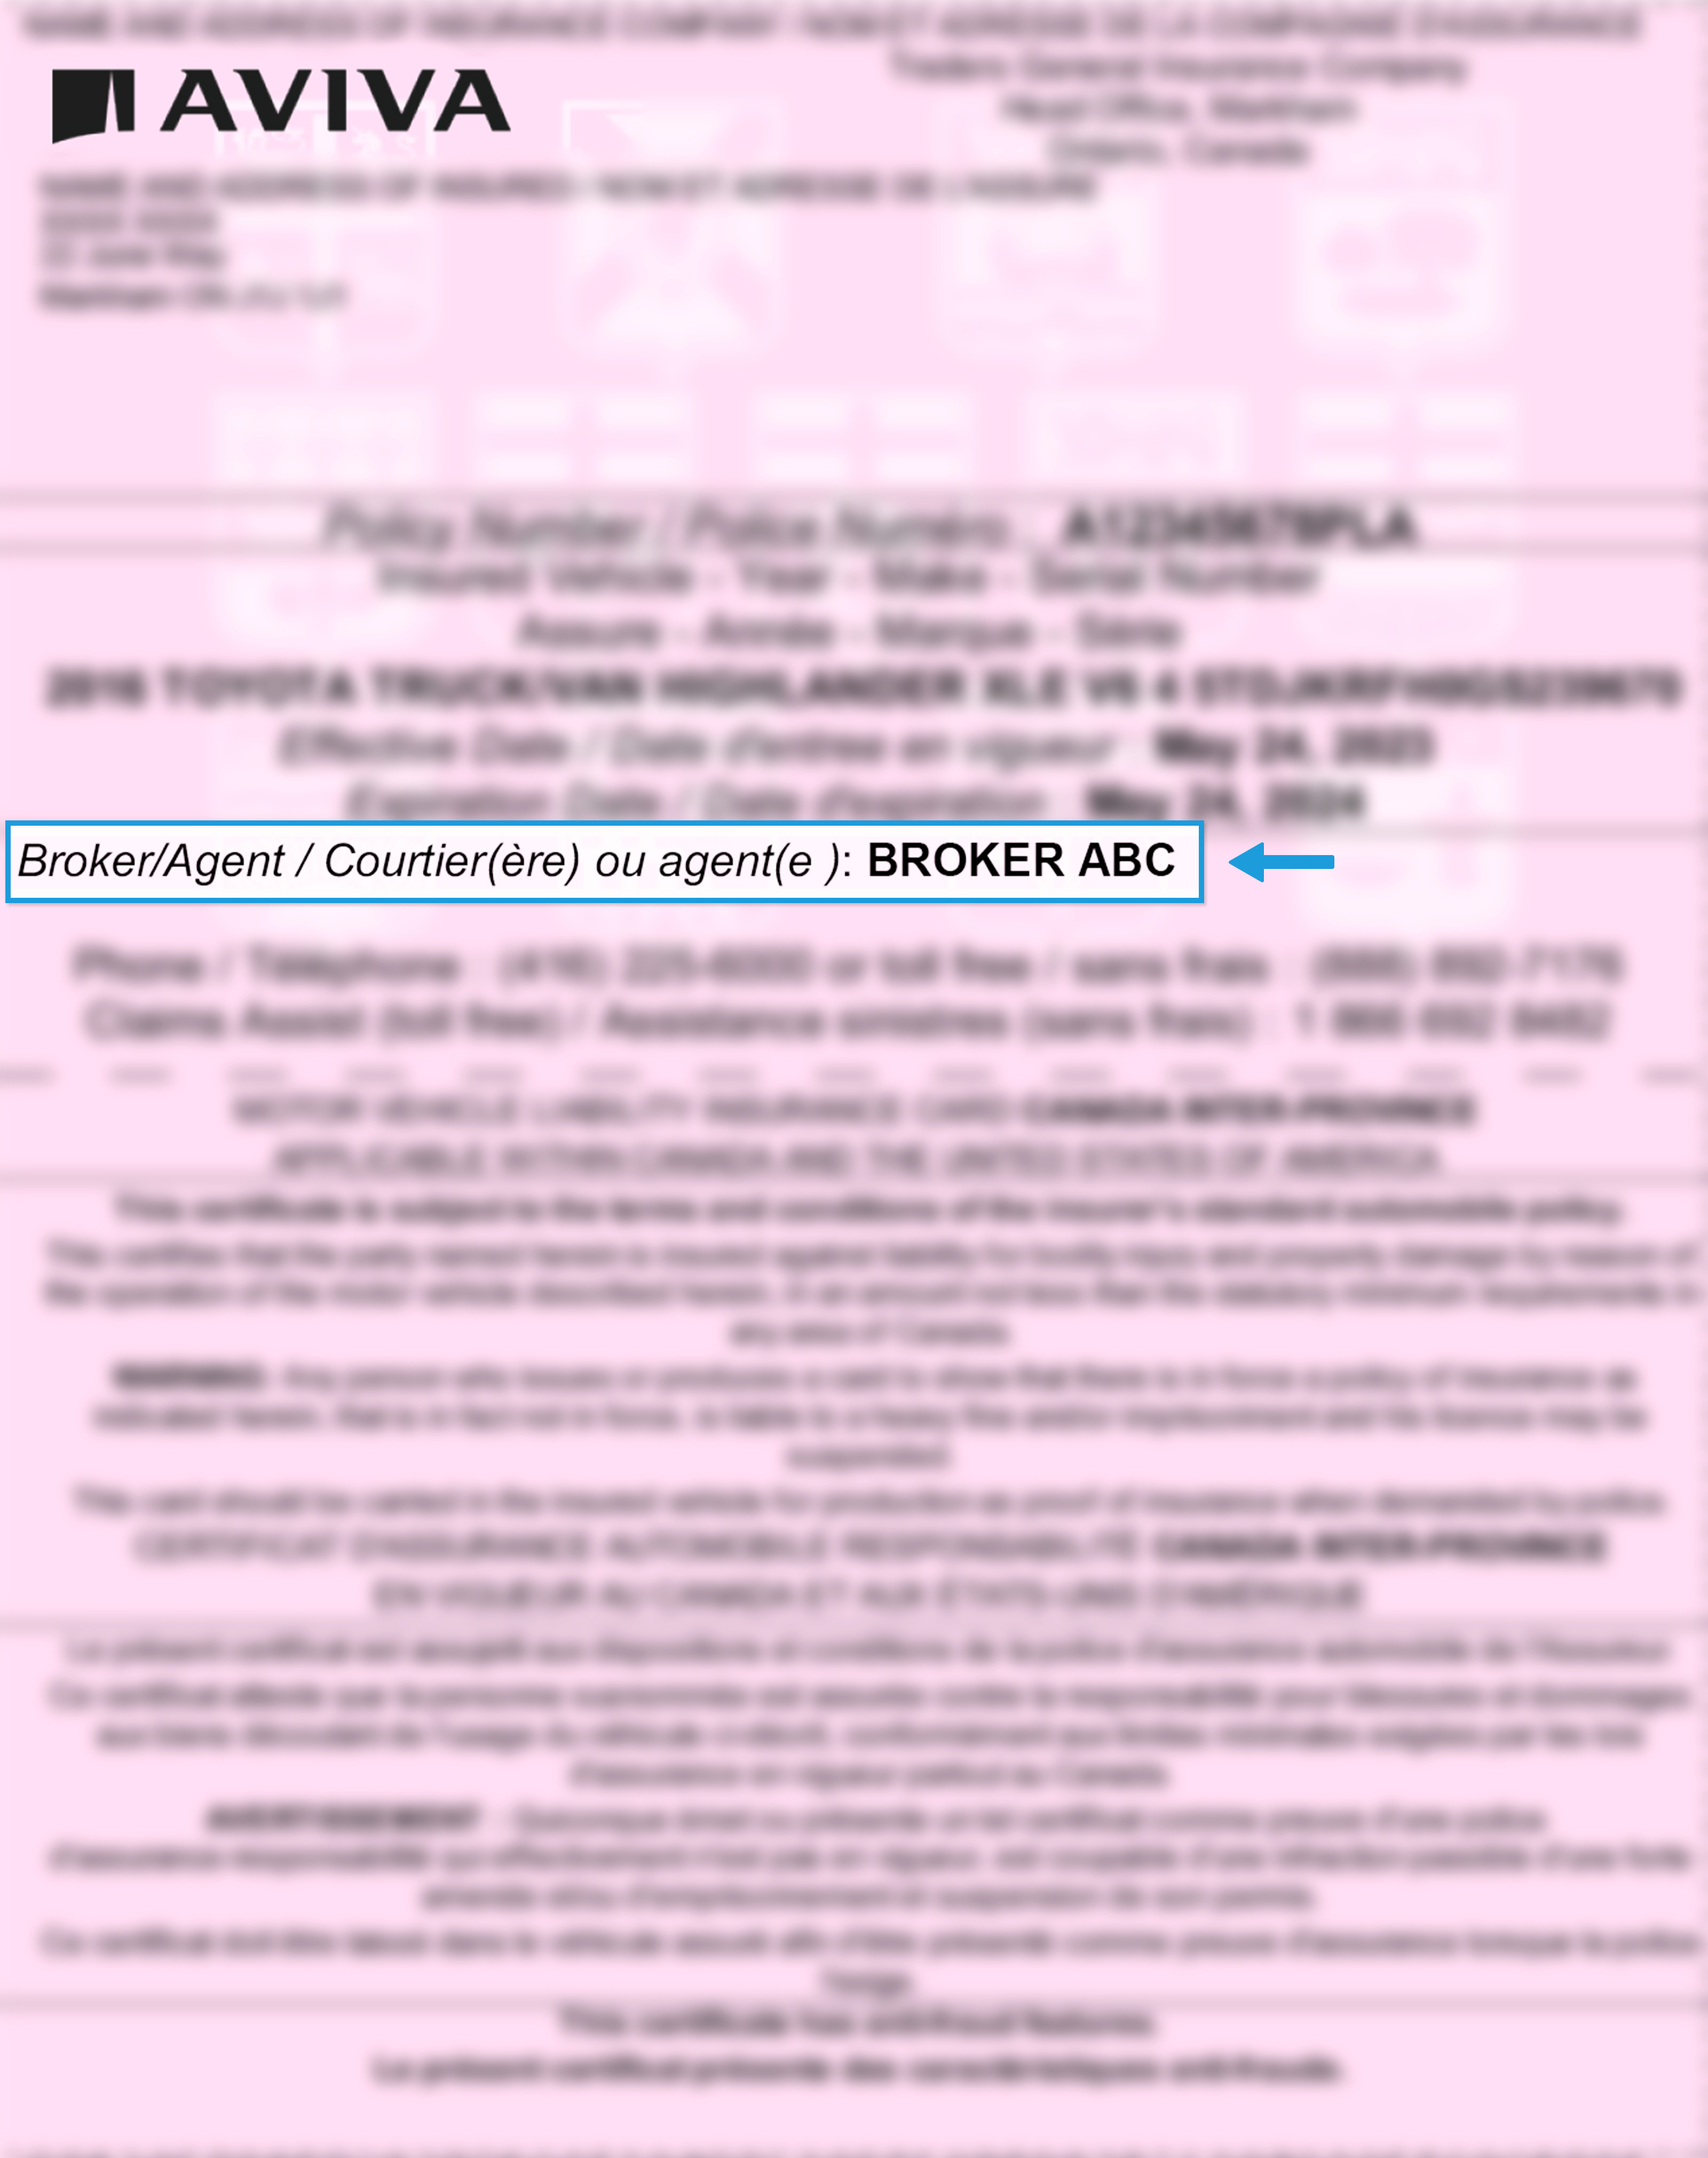 Blurred liability slip highlighting Broker/Agent details